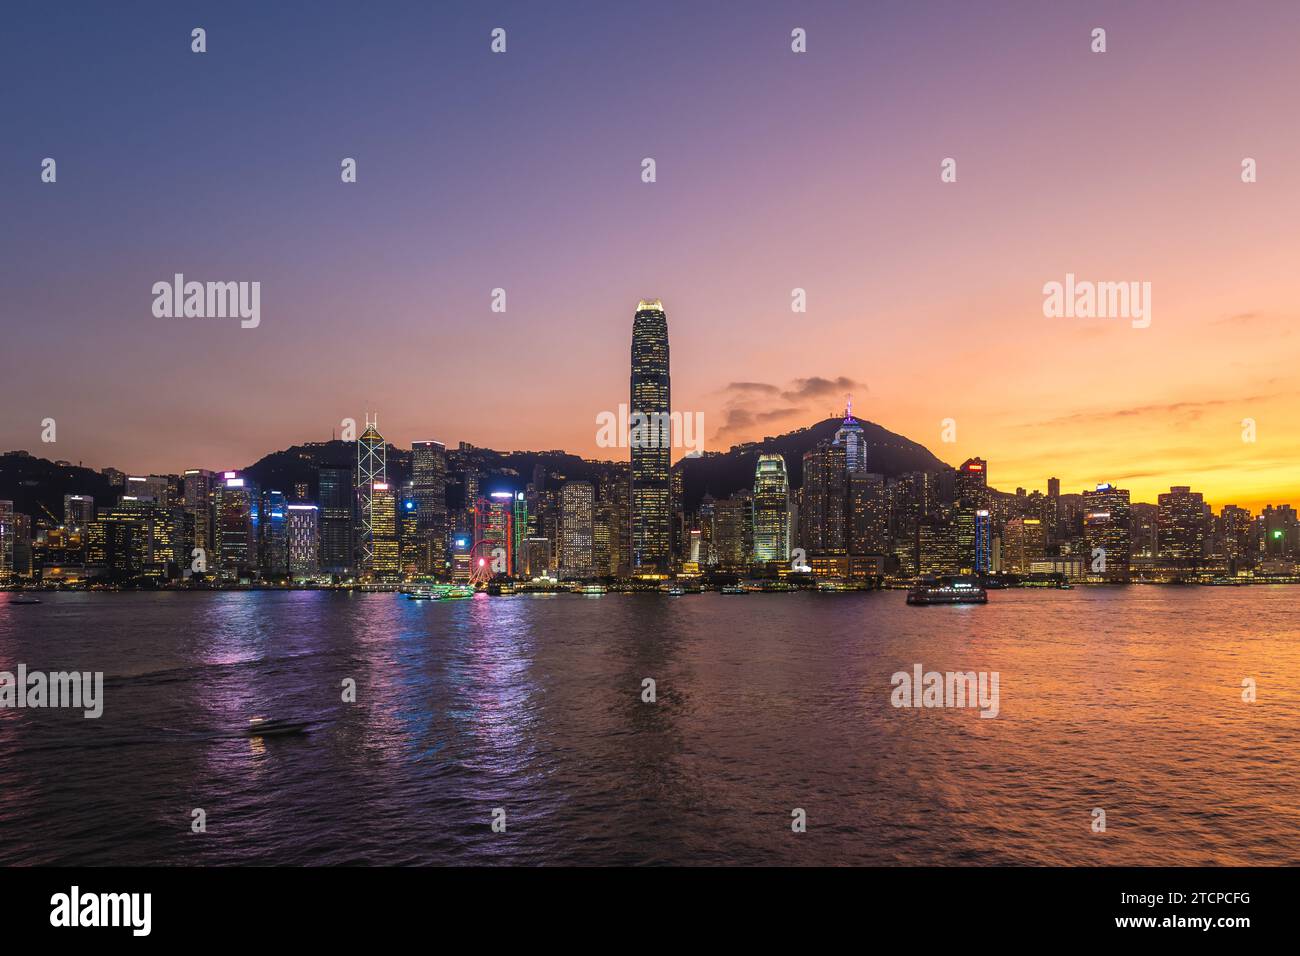 night view of victoria harbor and hongkong island in hong kong, China Stock Photo